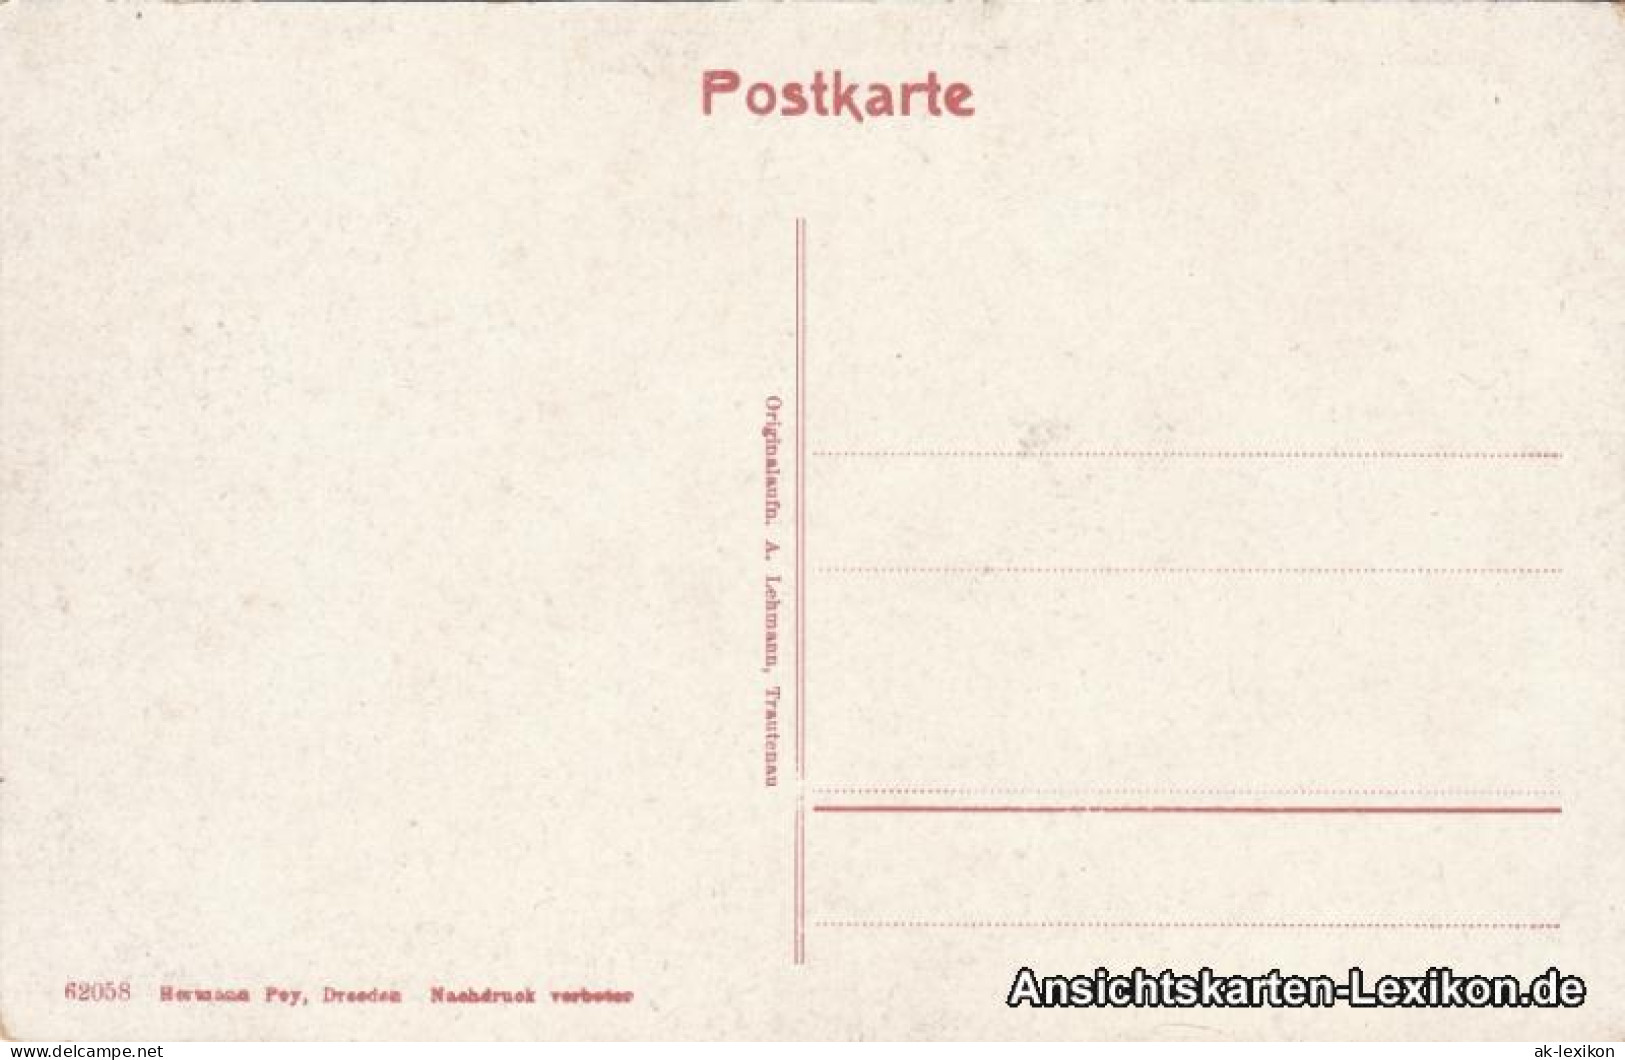 Postcard Schreiberhau Szklarska Poręba Schneegruben Mit Baude 1916  - Schlesien